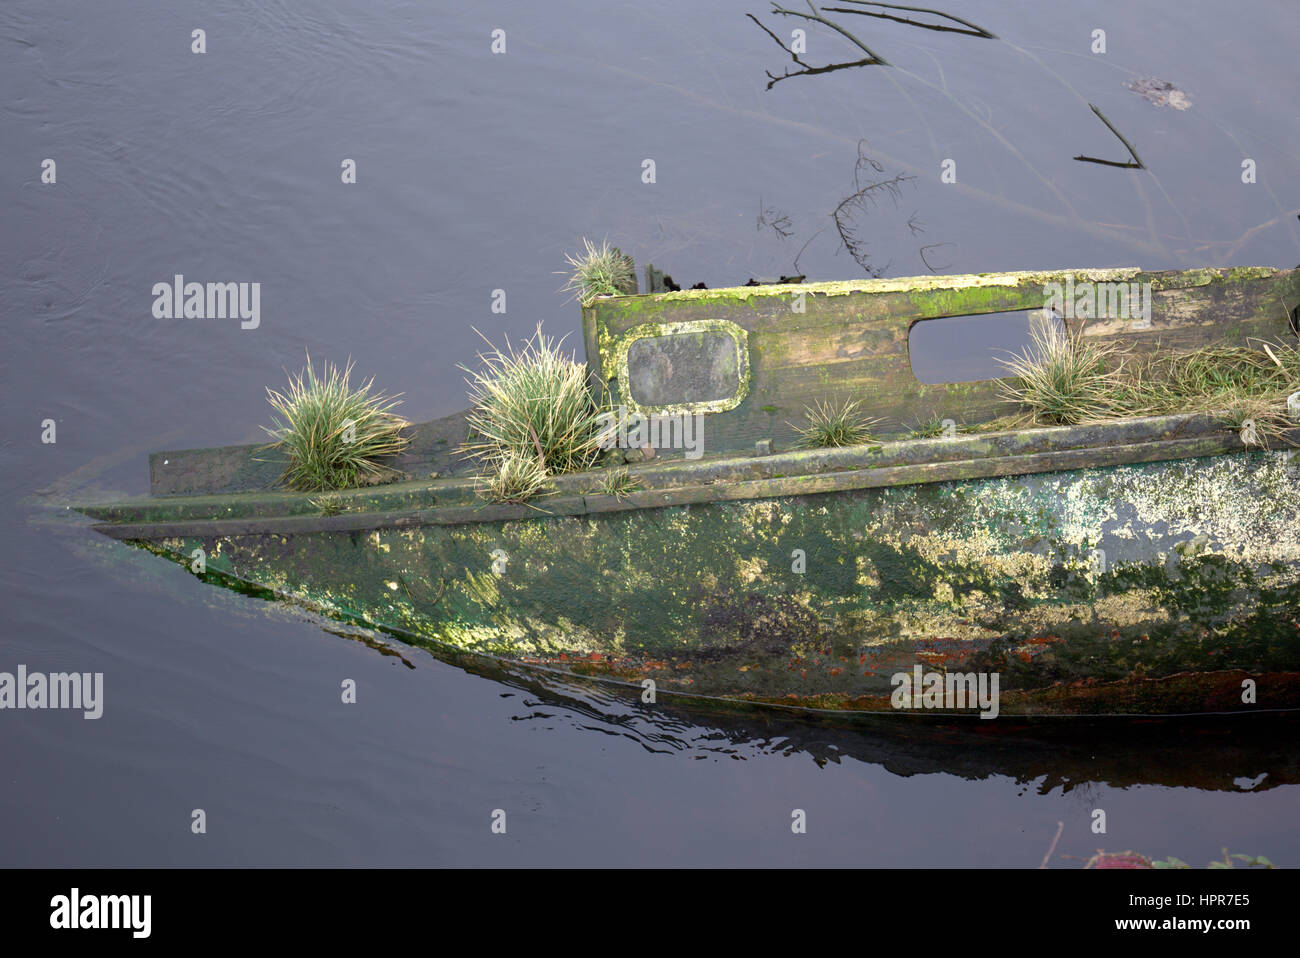 Barco hundido abandonado cubierto de malezas río leven dunbarton Foto de stock